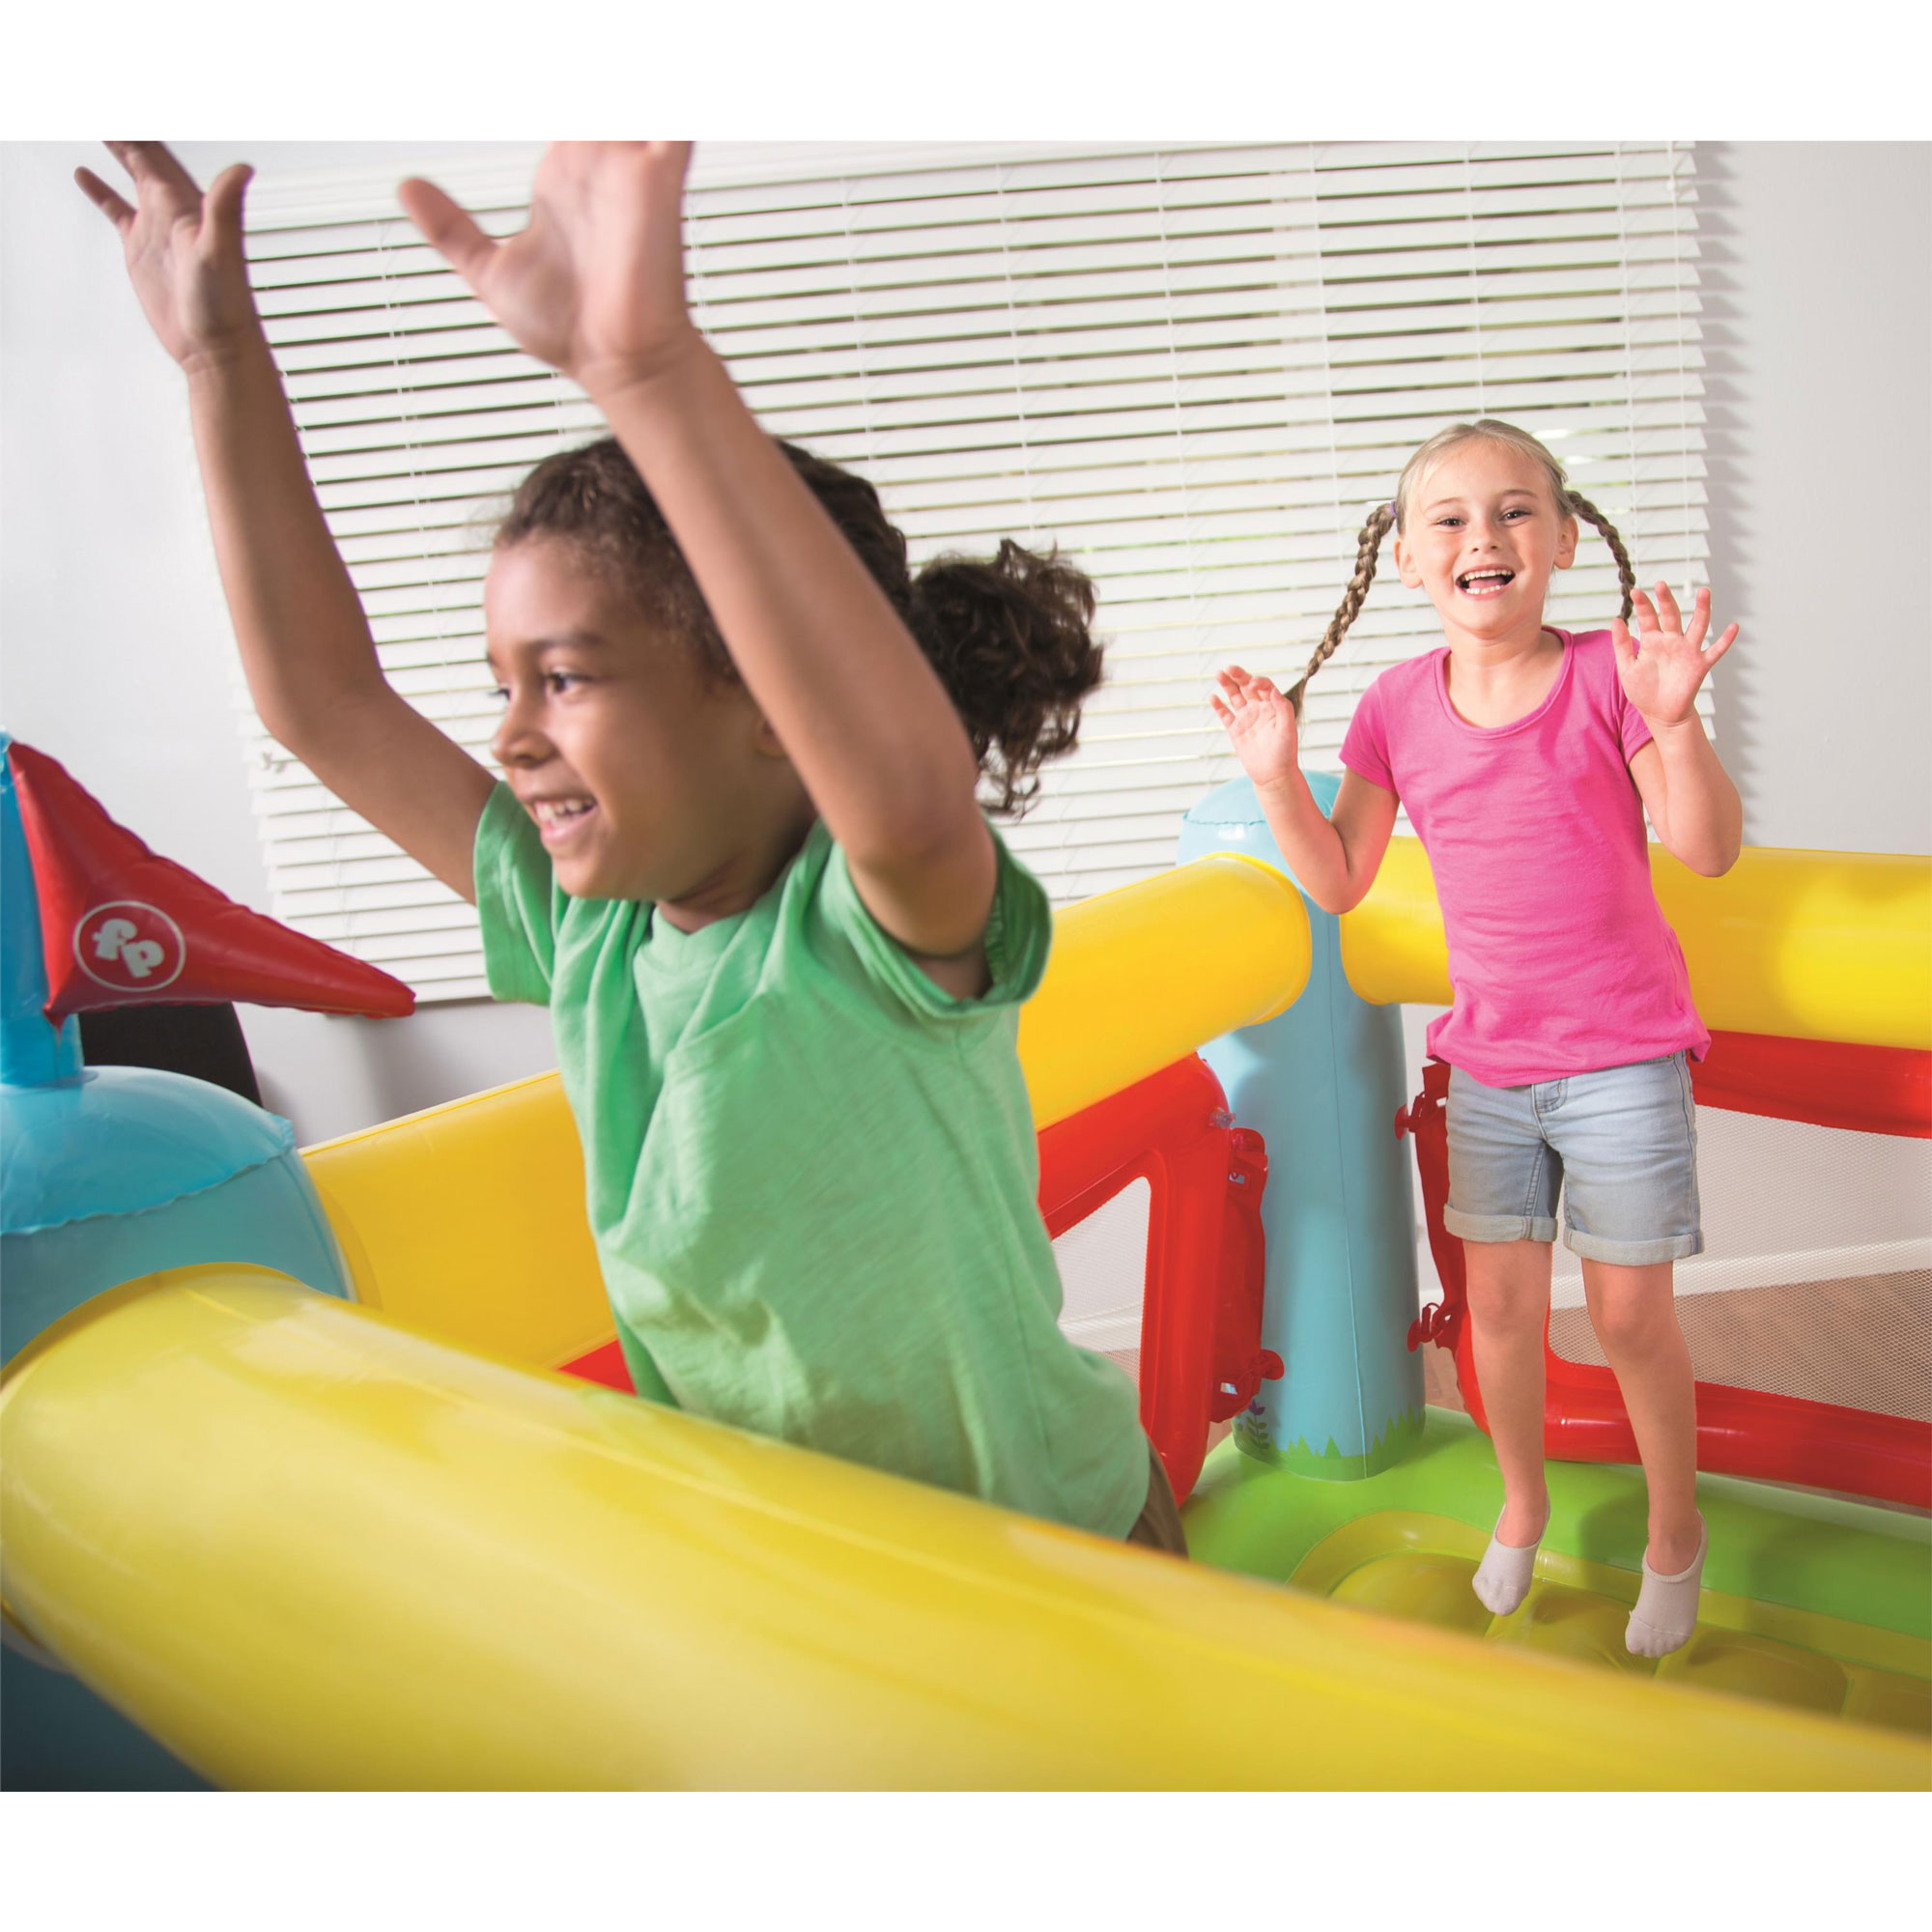 FisherPrice Kids Bouncetastic Bouncer Indoor Inflatable